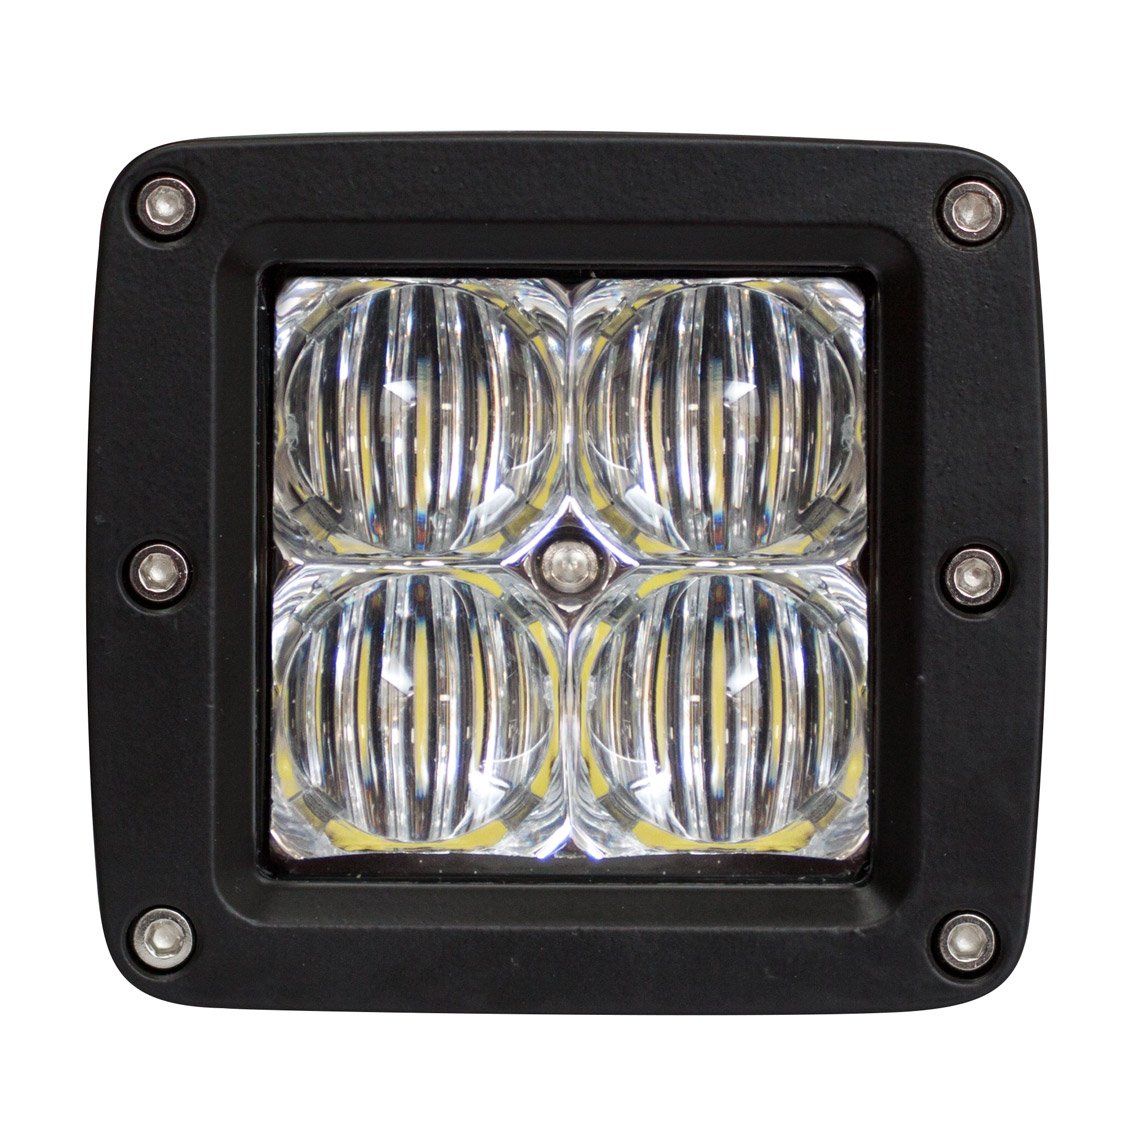 Obrázek produktu SHARK LED Work Light, CREE LED, 16W 5D Reflector 810-5016-4